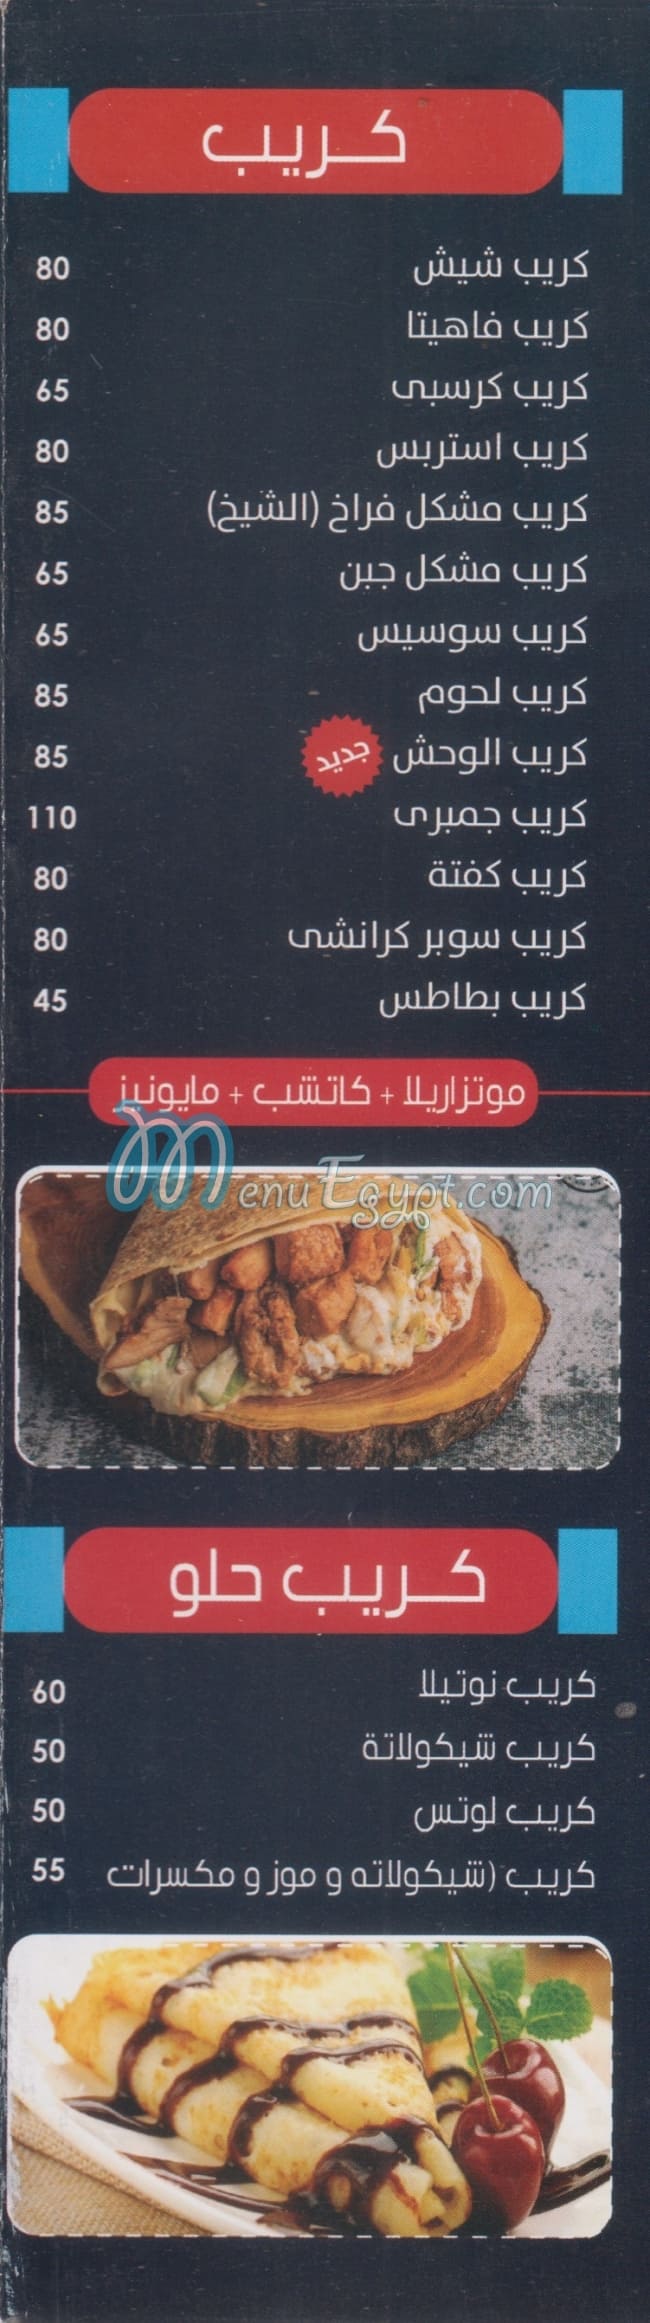 El sheikh ftaaer & pizza menu